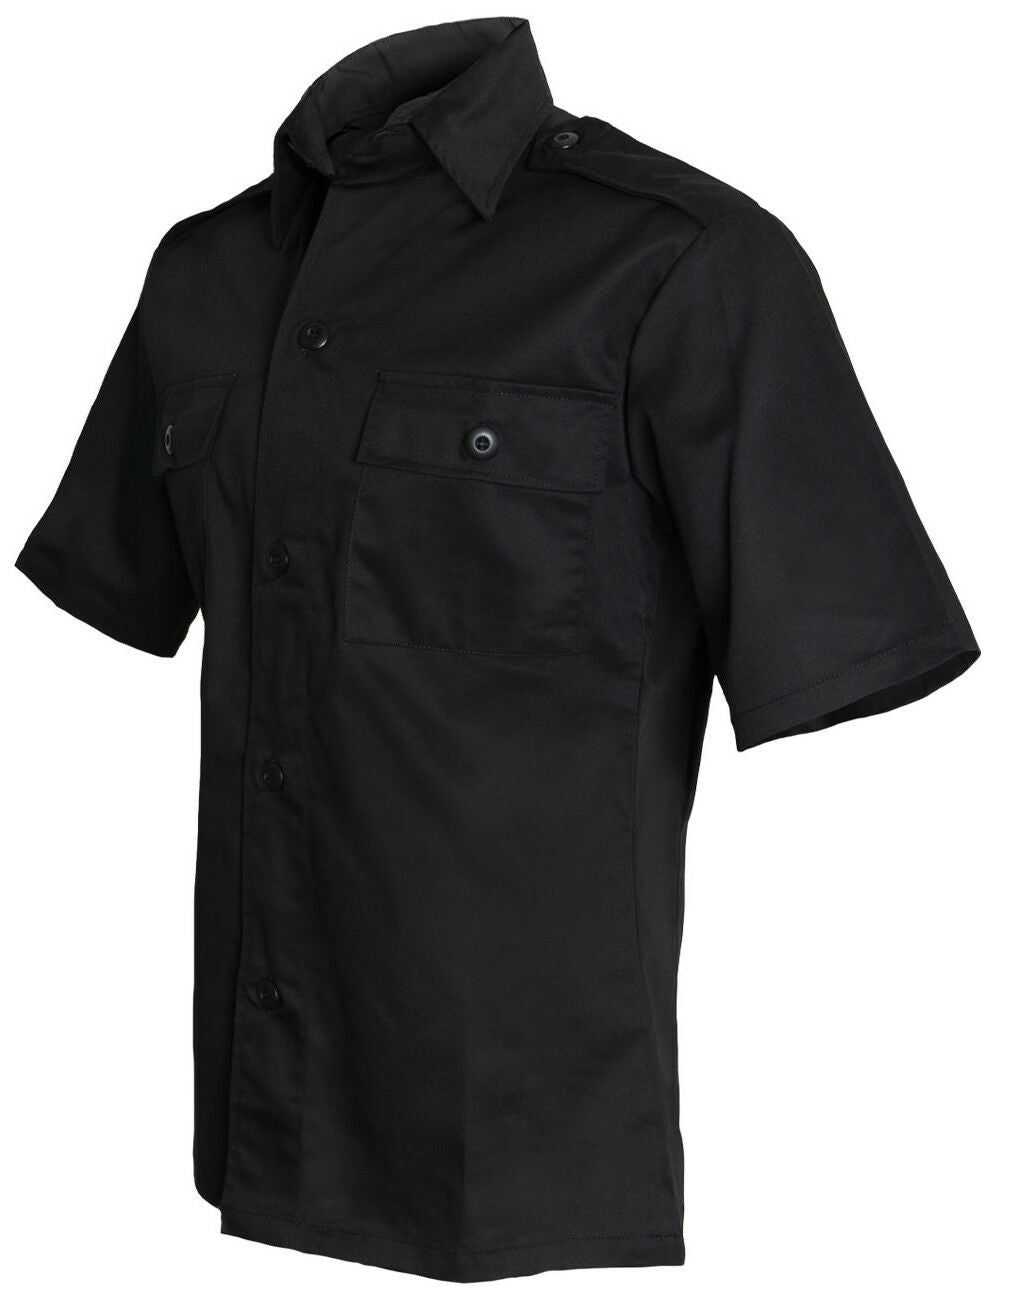 Rothco Short Sleeve Tactical Shirt - Black